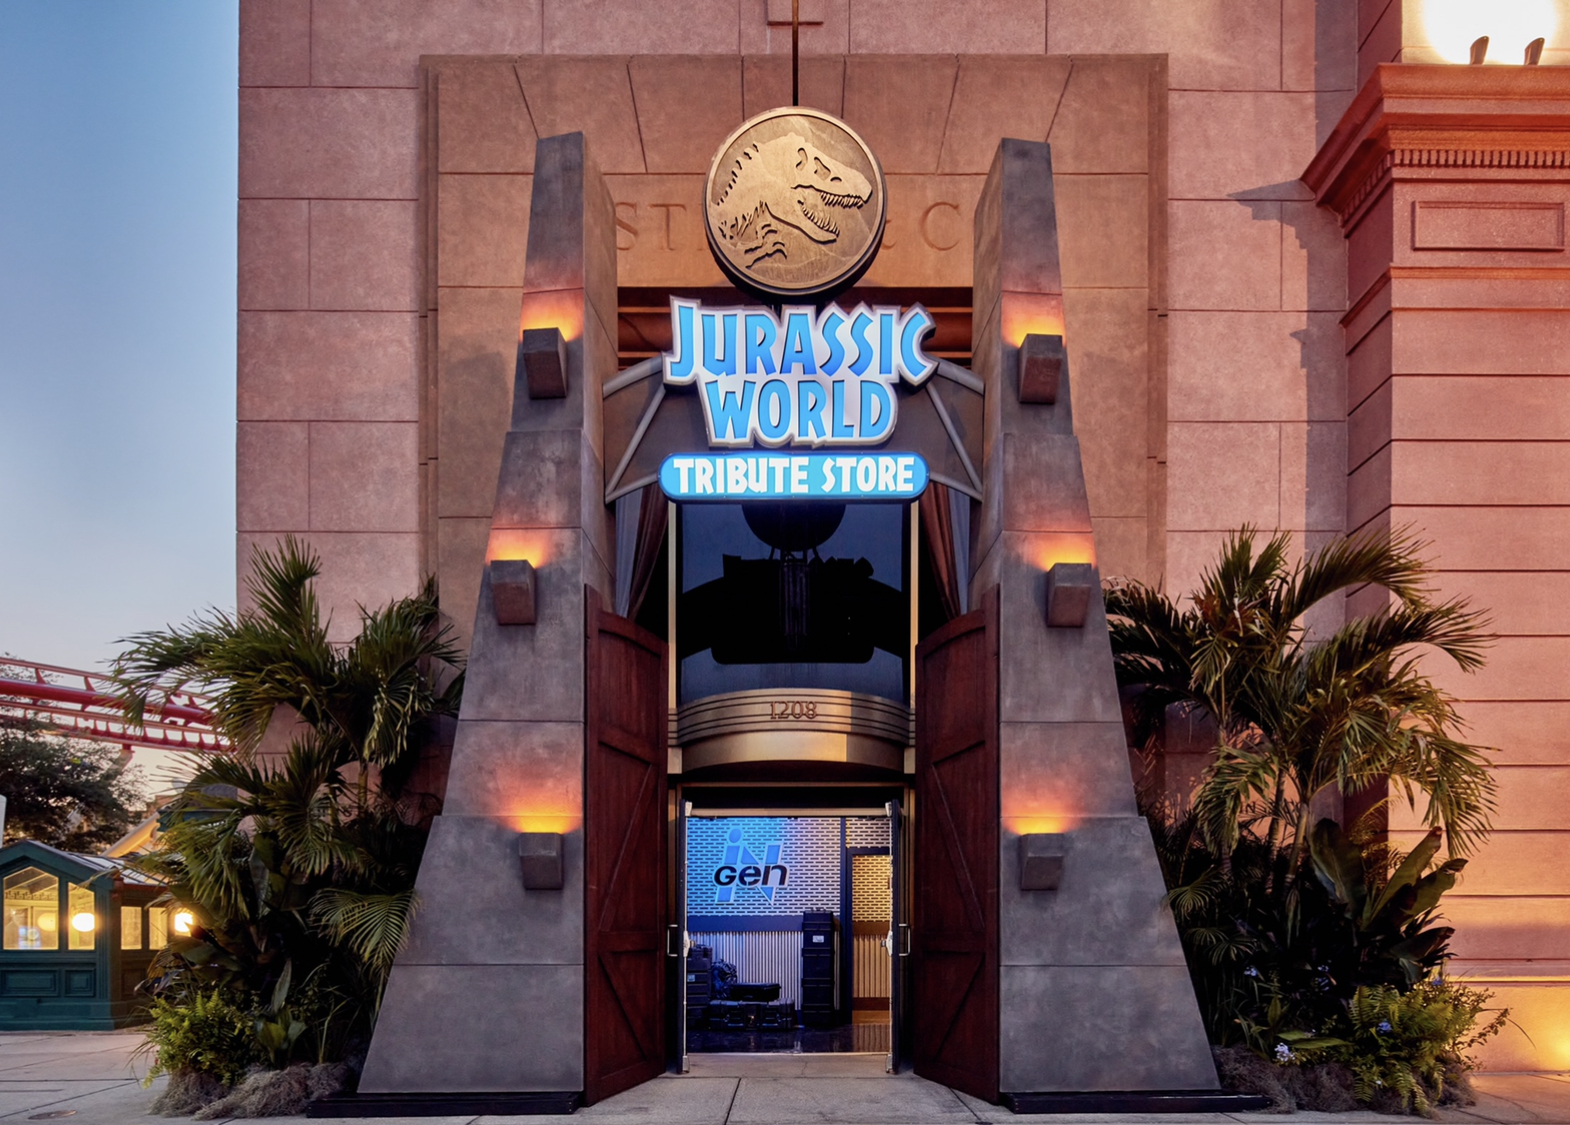 Jurassic World Tribute Store